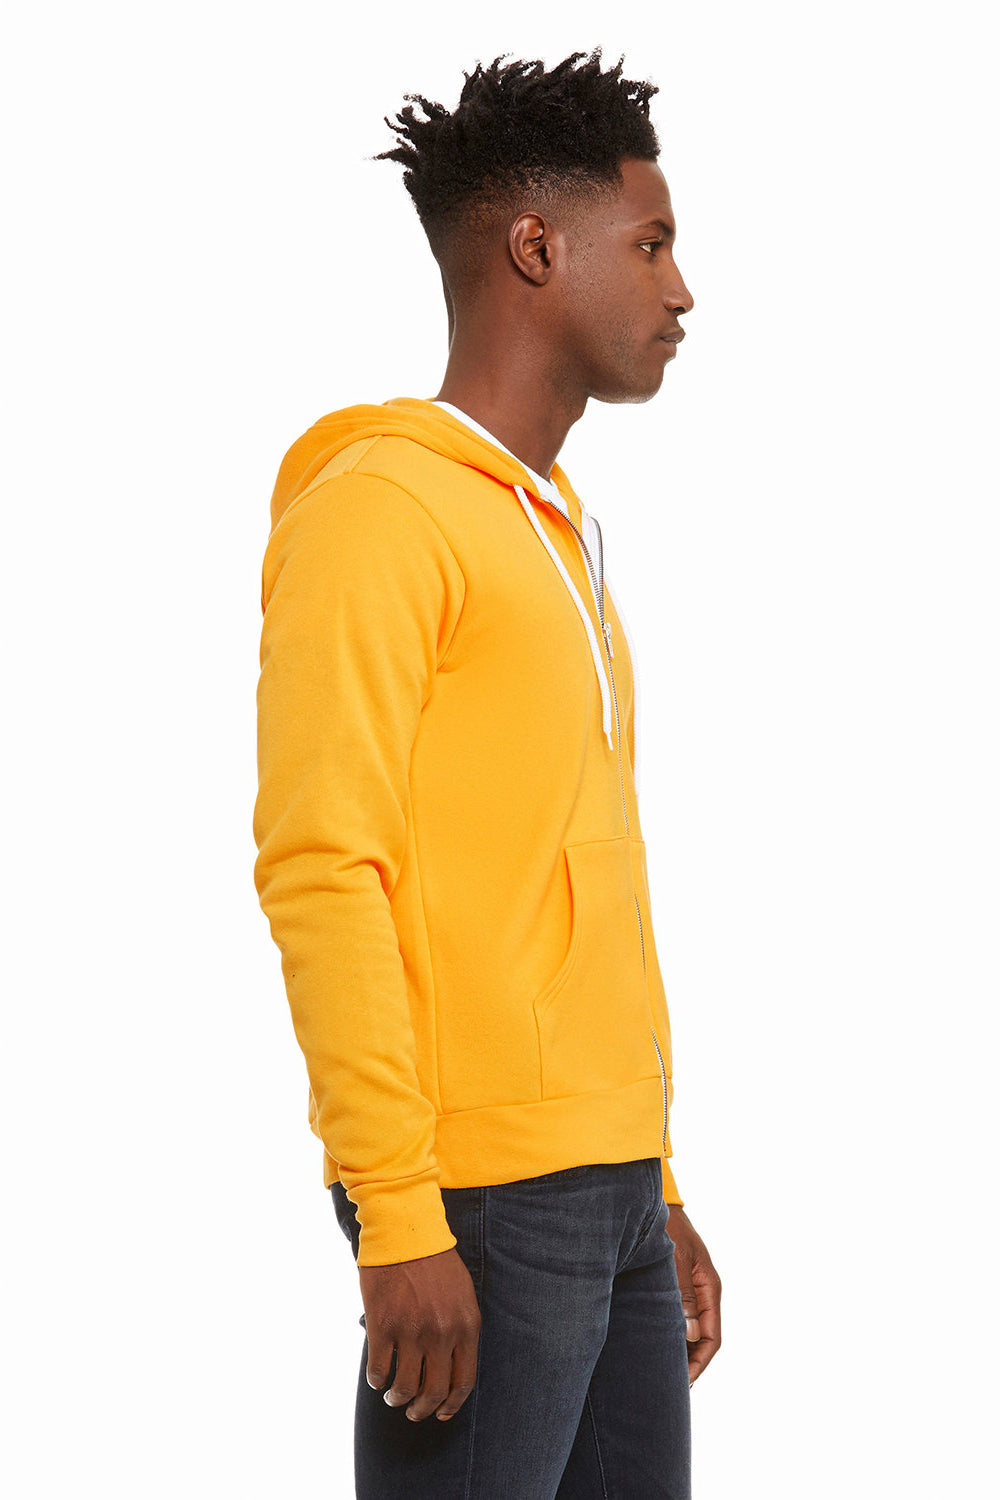 Bella + Canvas BC3739/3739 Mens Fleece Full Zip Hooded Sweatshirt Hoodie Gold Model Side